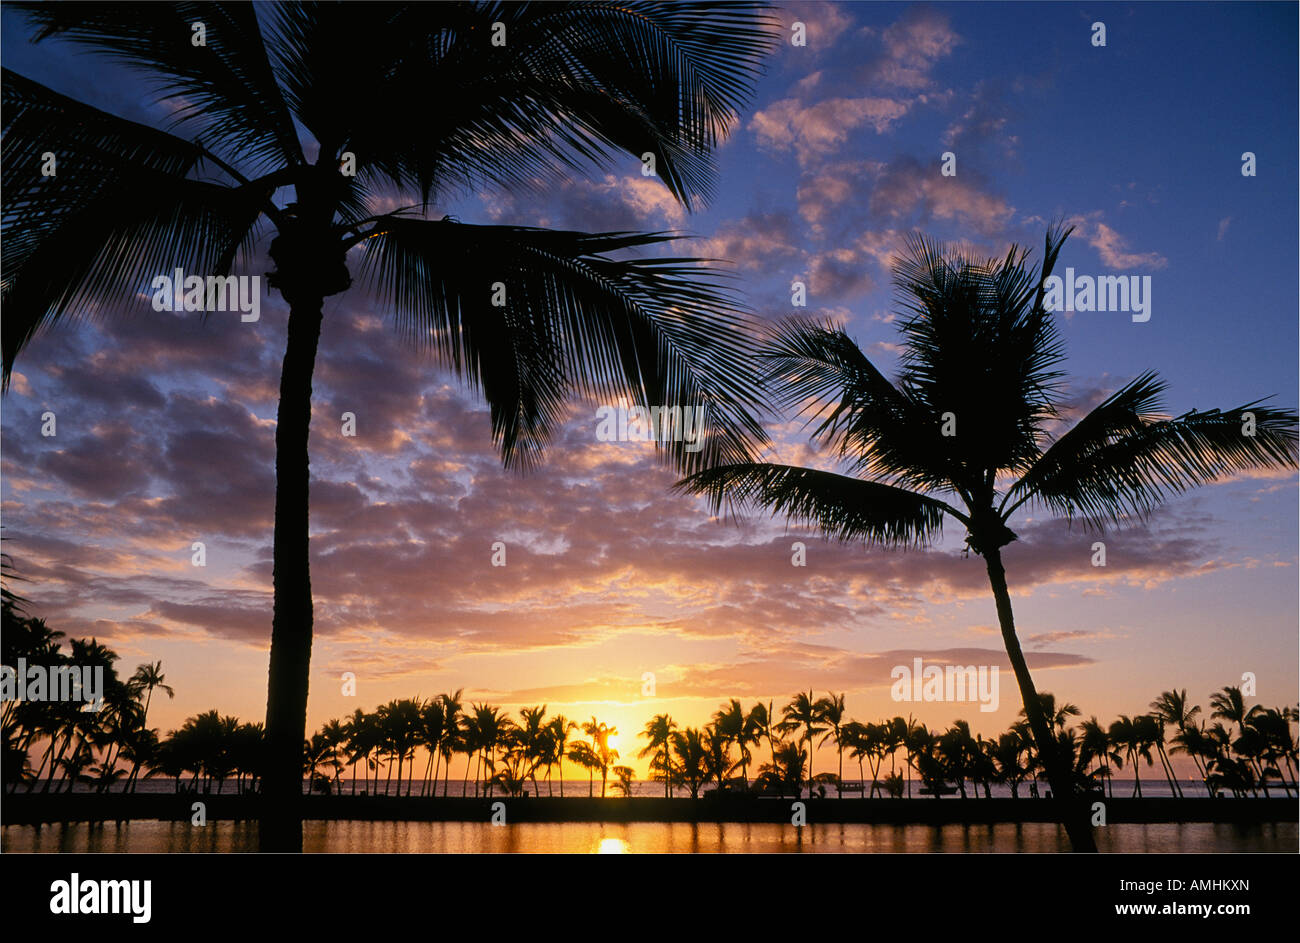 Coconut palm trees at sunset Anaehoomalu Bay Waikoloa beach resort Kohala Coast Island of Hawaii with Kuualii fishpond Stock Photo